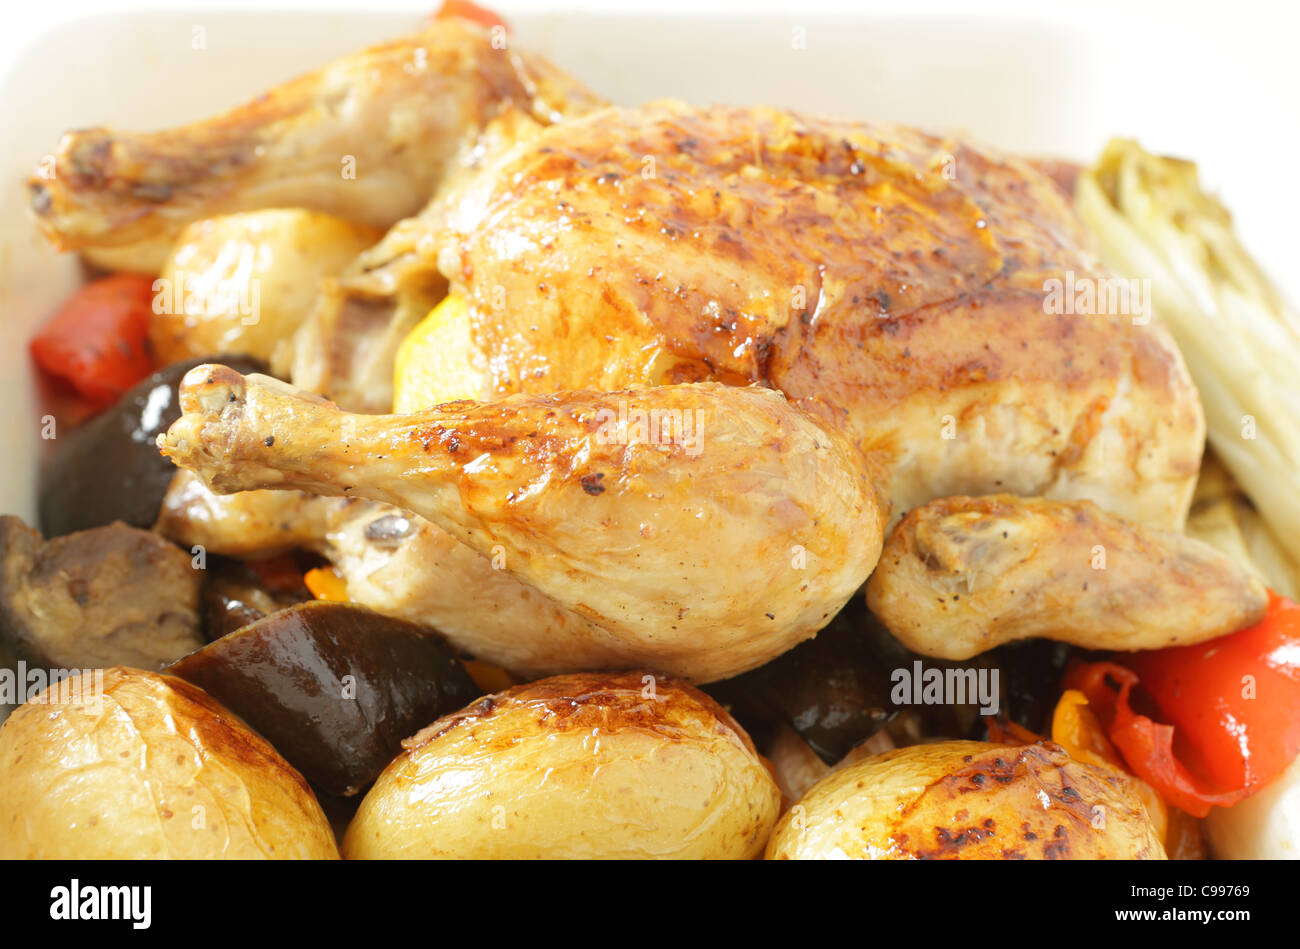 Gebratenes Huhn in einer Schüssel auf einem Bett von Ofen gebraten Gemüse einschließlich Kartoffeln, Paprika, Chicorée, Auberginen und Knoblauch. Stockfoto